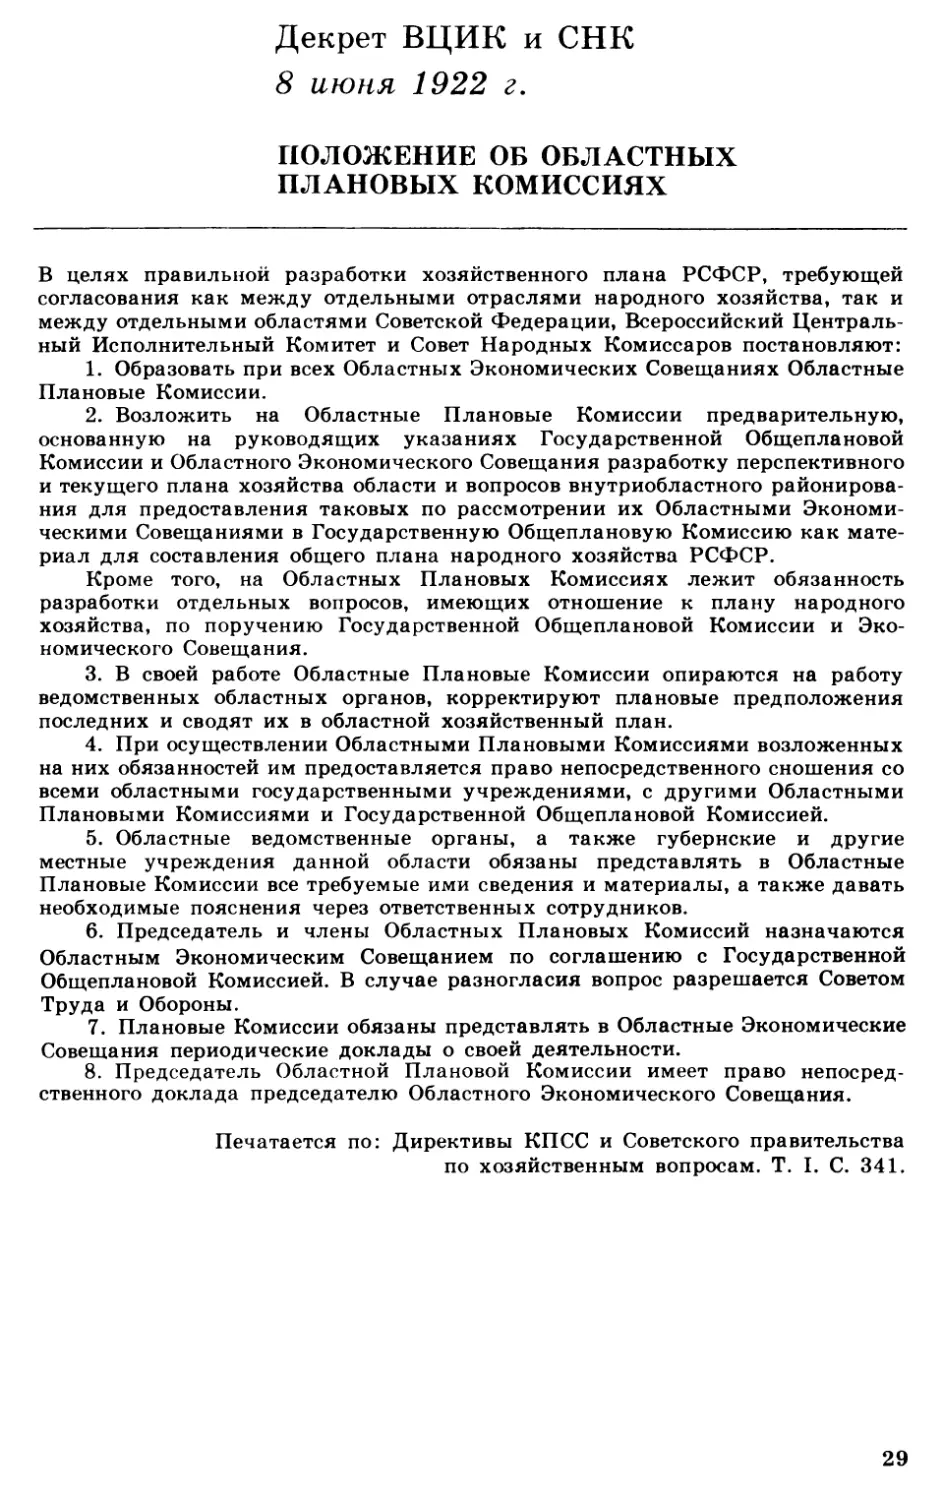 Декрет ВЦИК и СНК «Положение об Област ных Плановых Комиссиях»